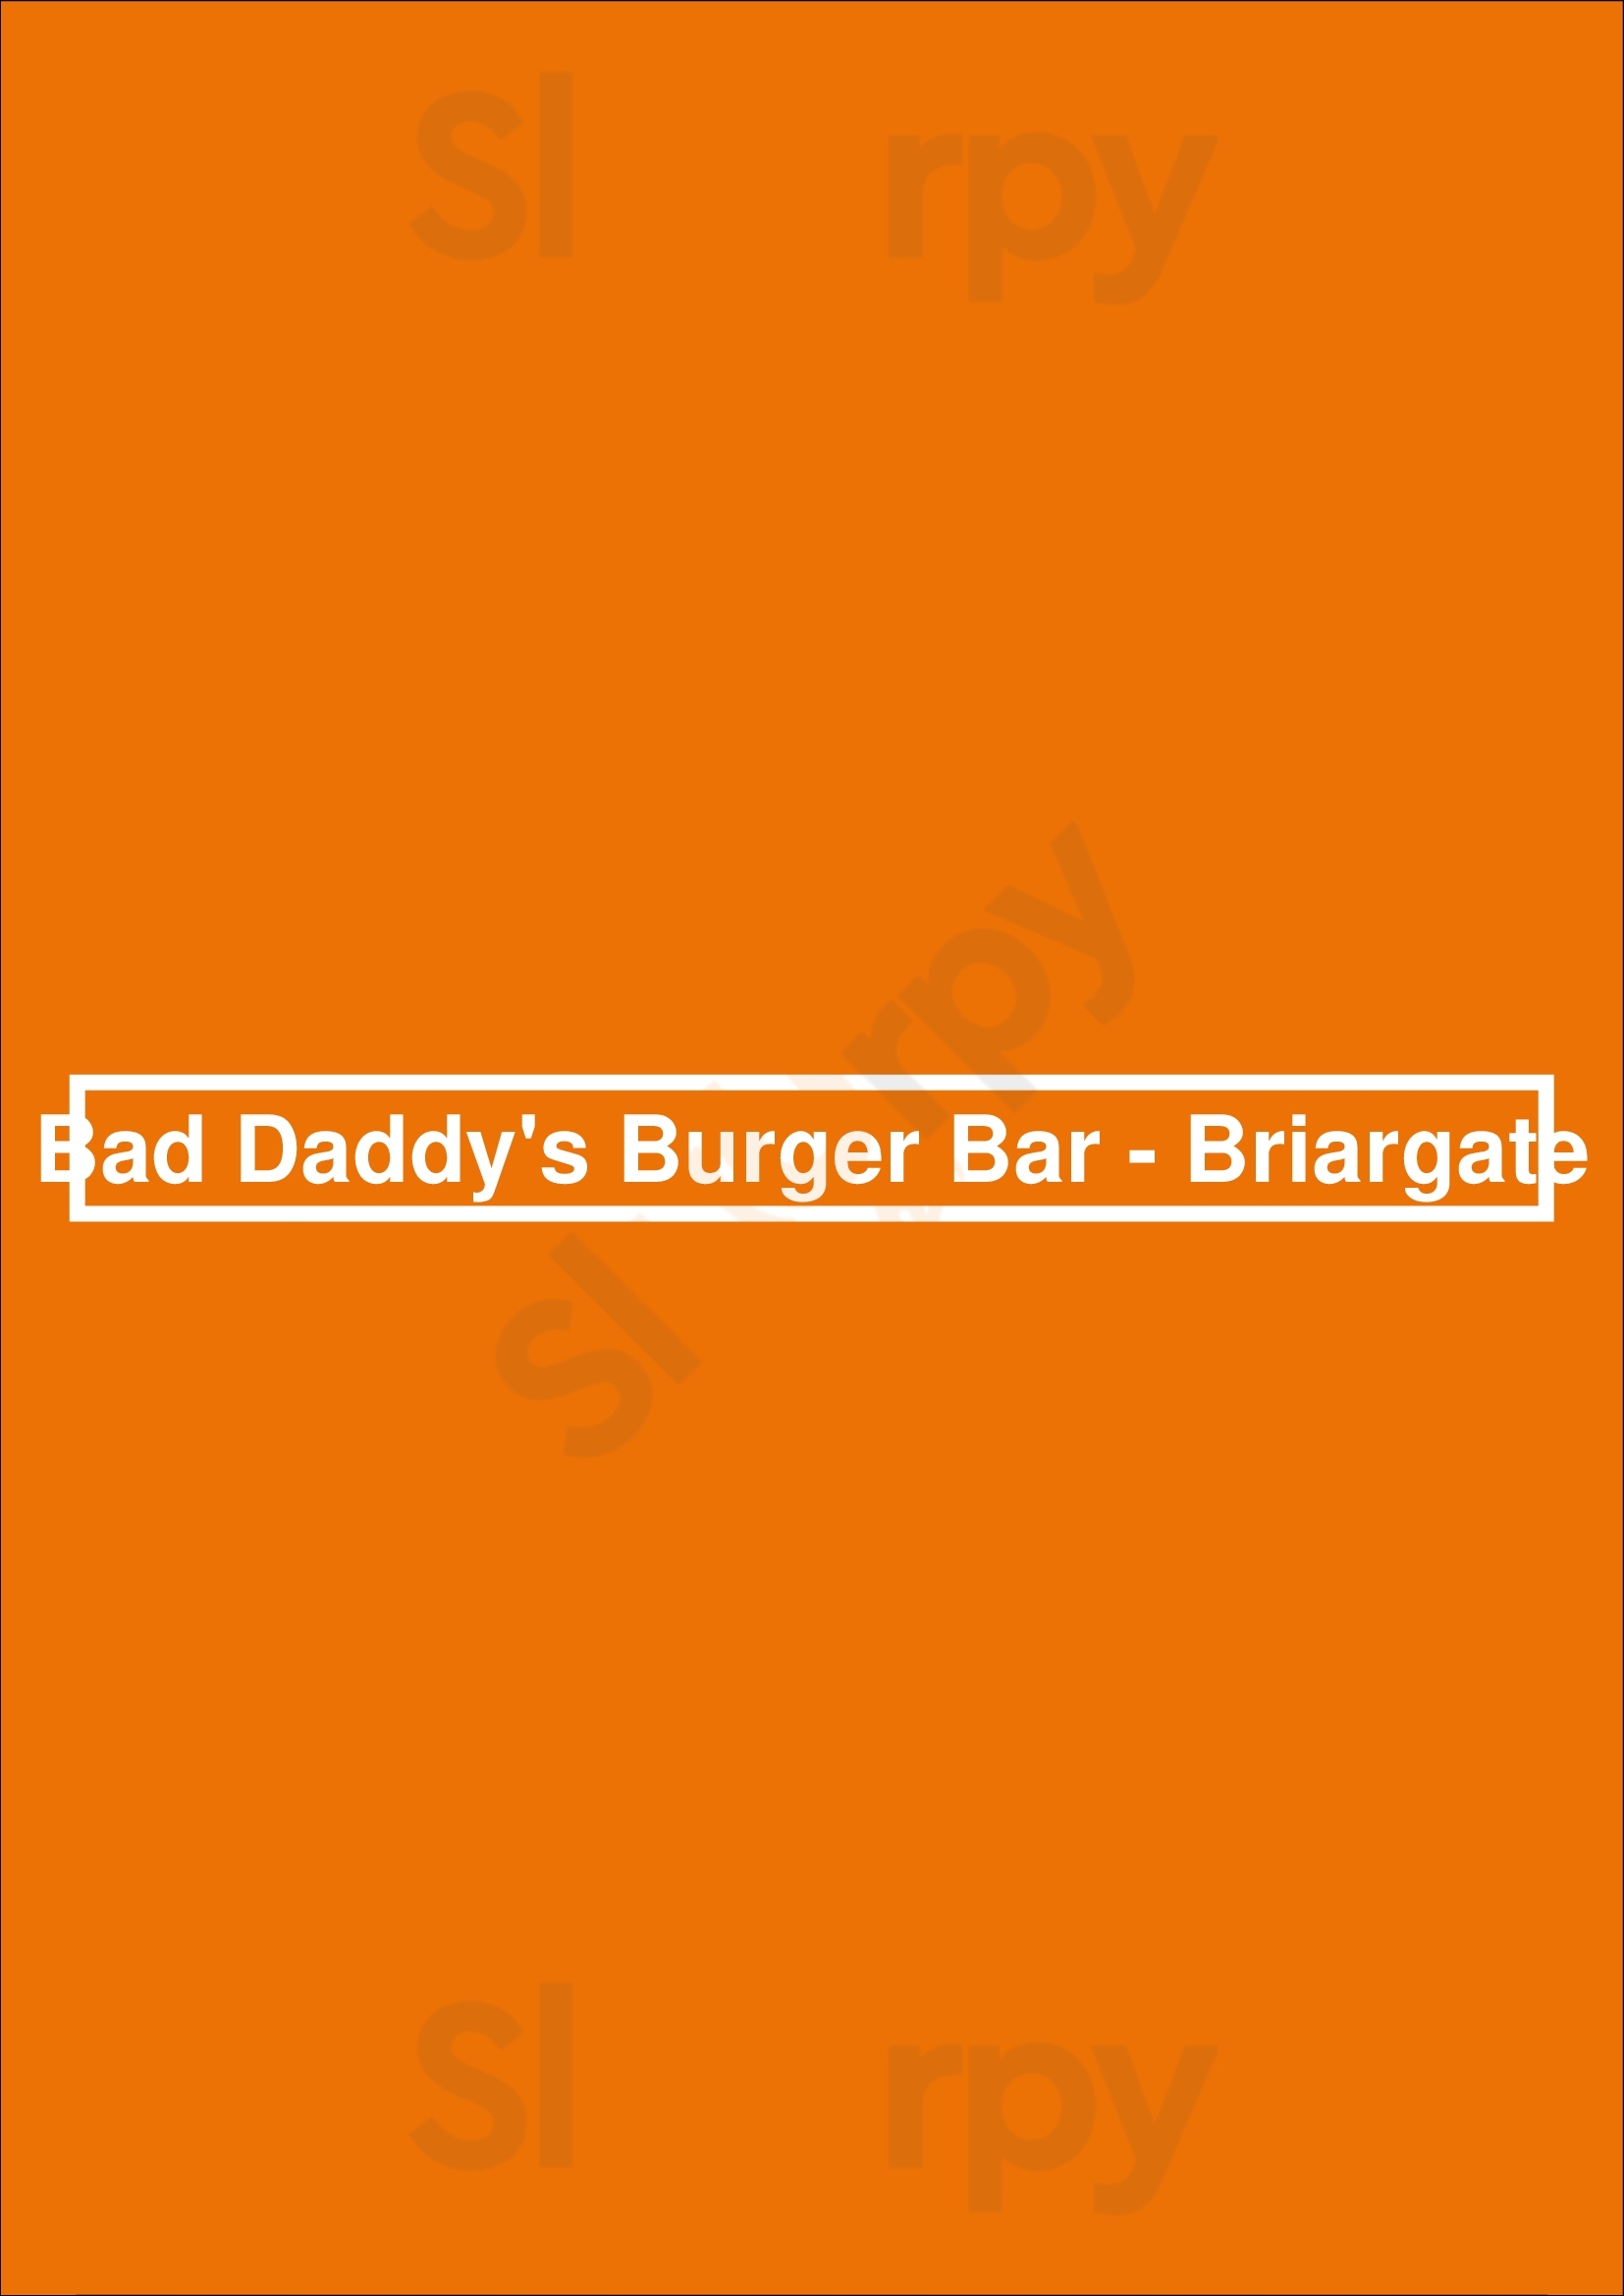 Bad Daddy's Burger Bar Colorado Springs Menu - 1